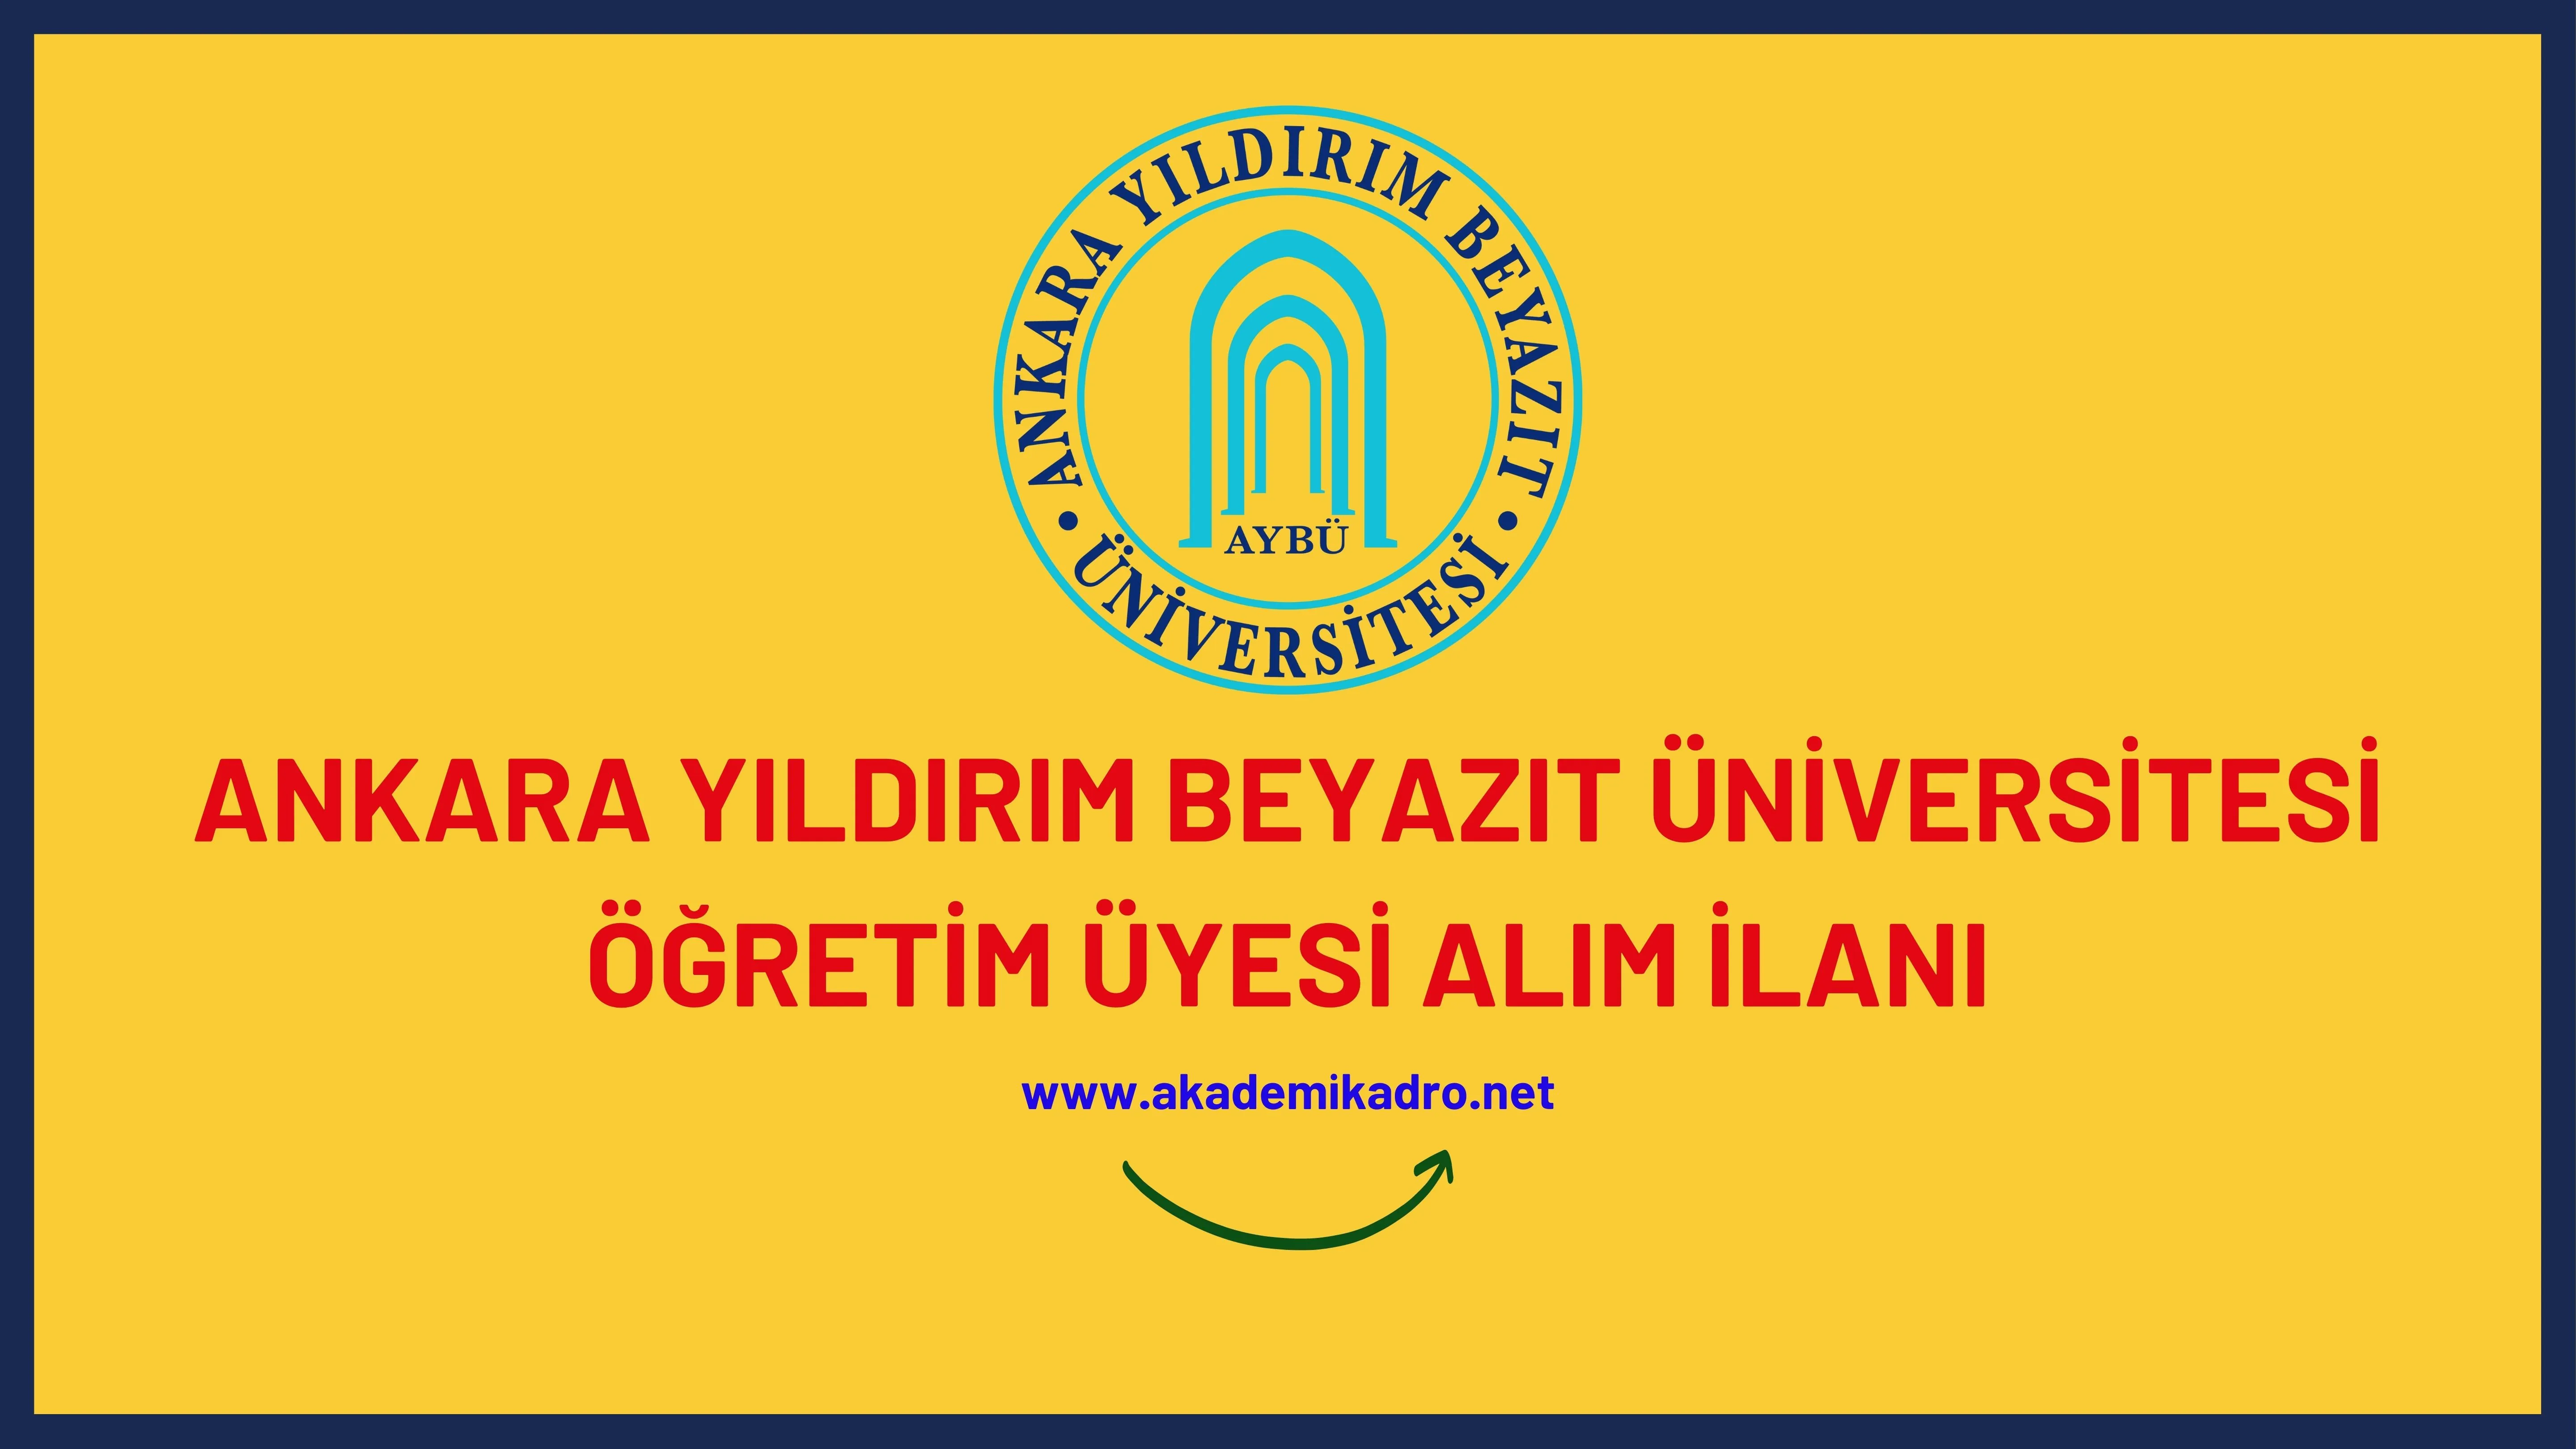 Ankara Yıldırım Beyazıt Üniversitesi birçok alandan 61 Öğretim üyesi alacak.